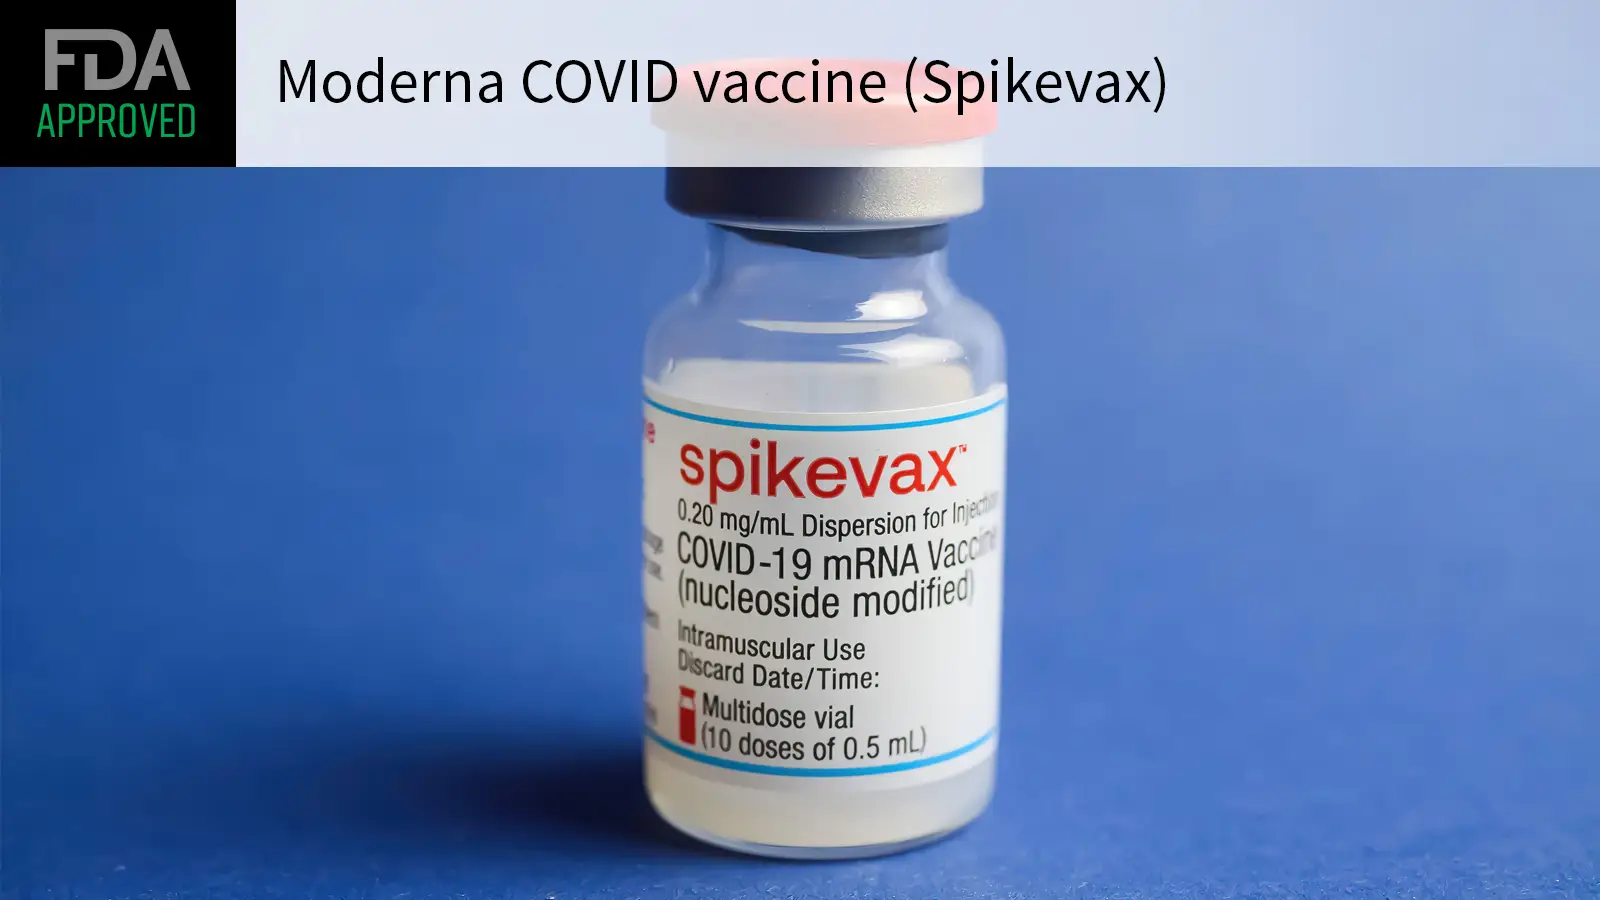 Etonnant : Le vaccin Moderna vient seulement de recevoir l’autorisation complète pour sa commercialisation